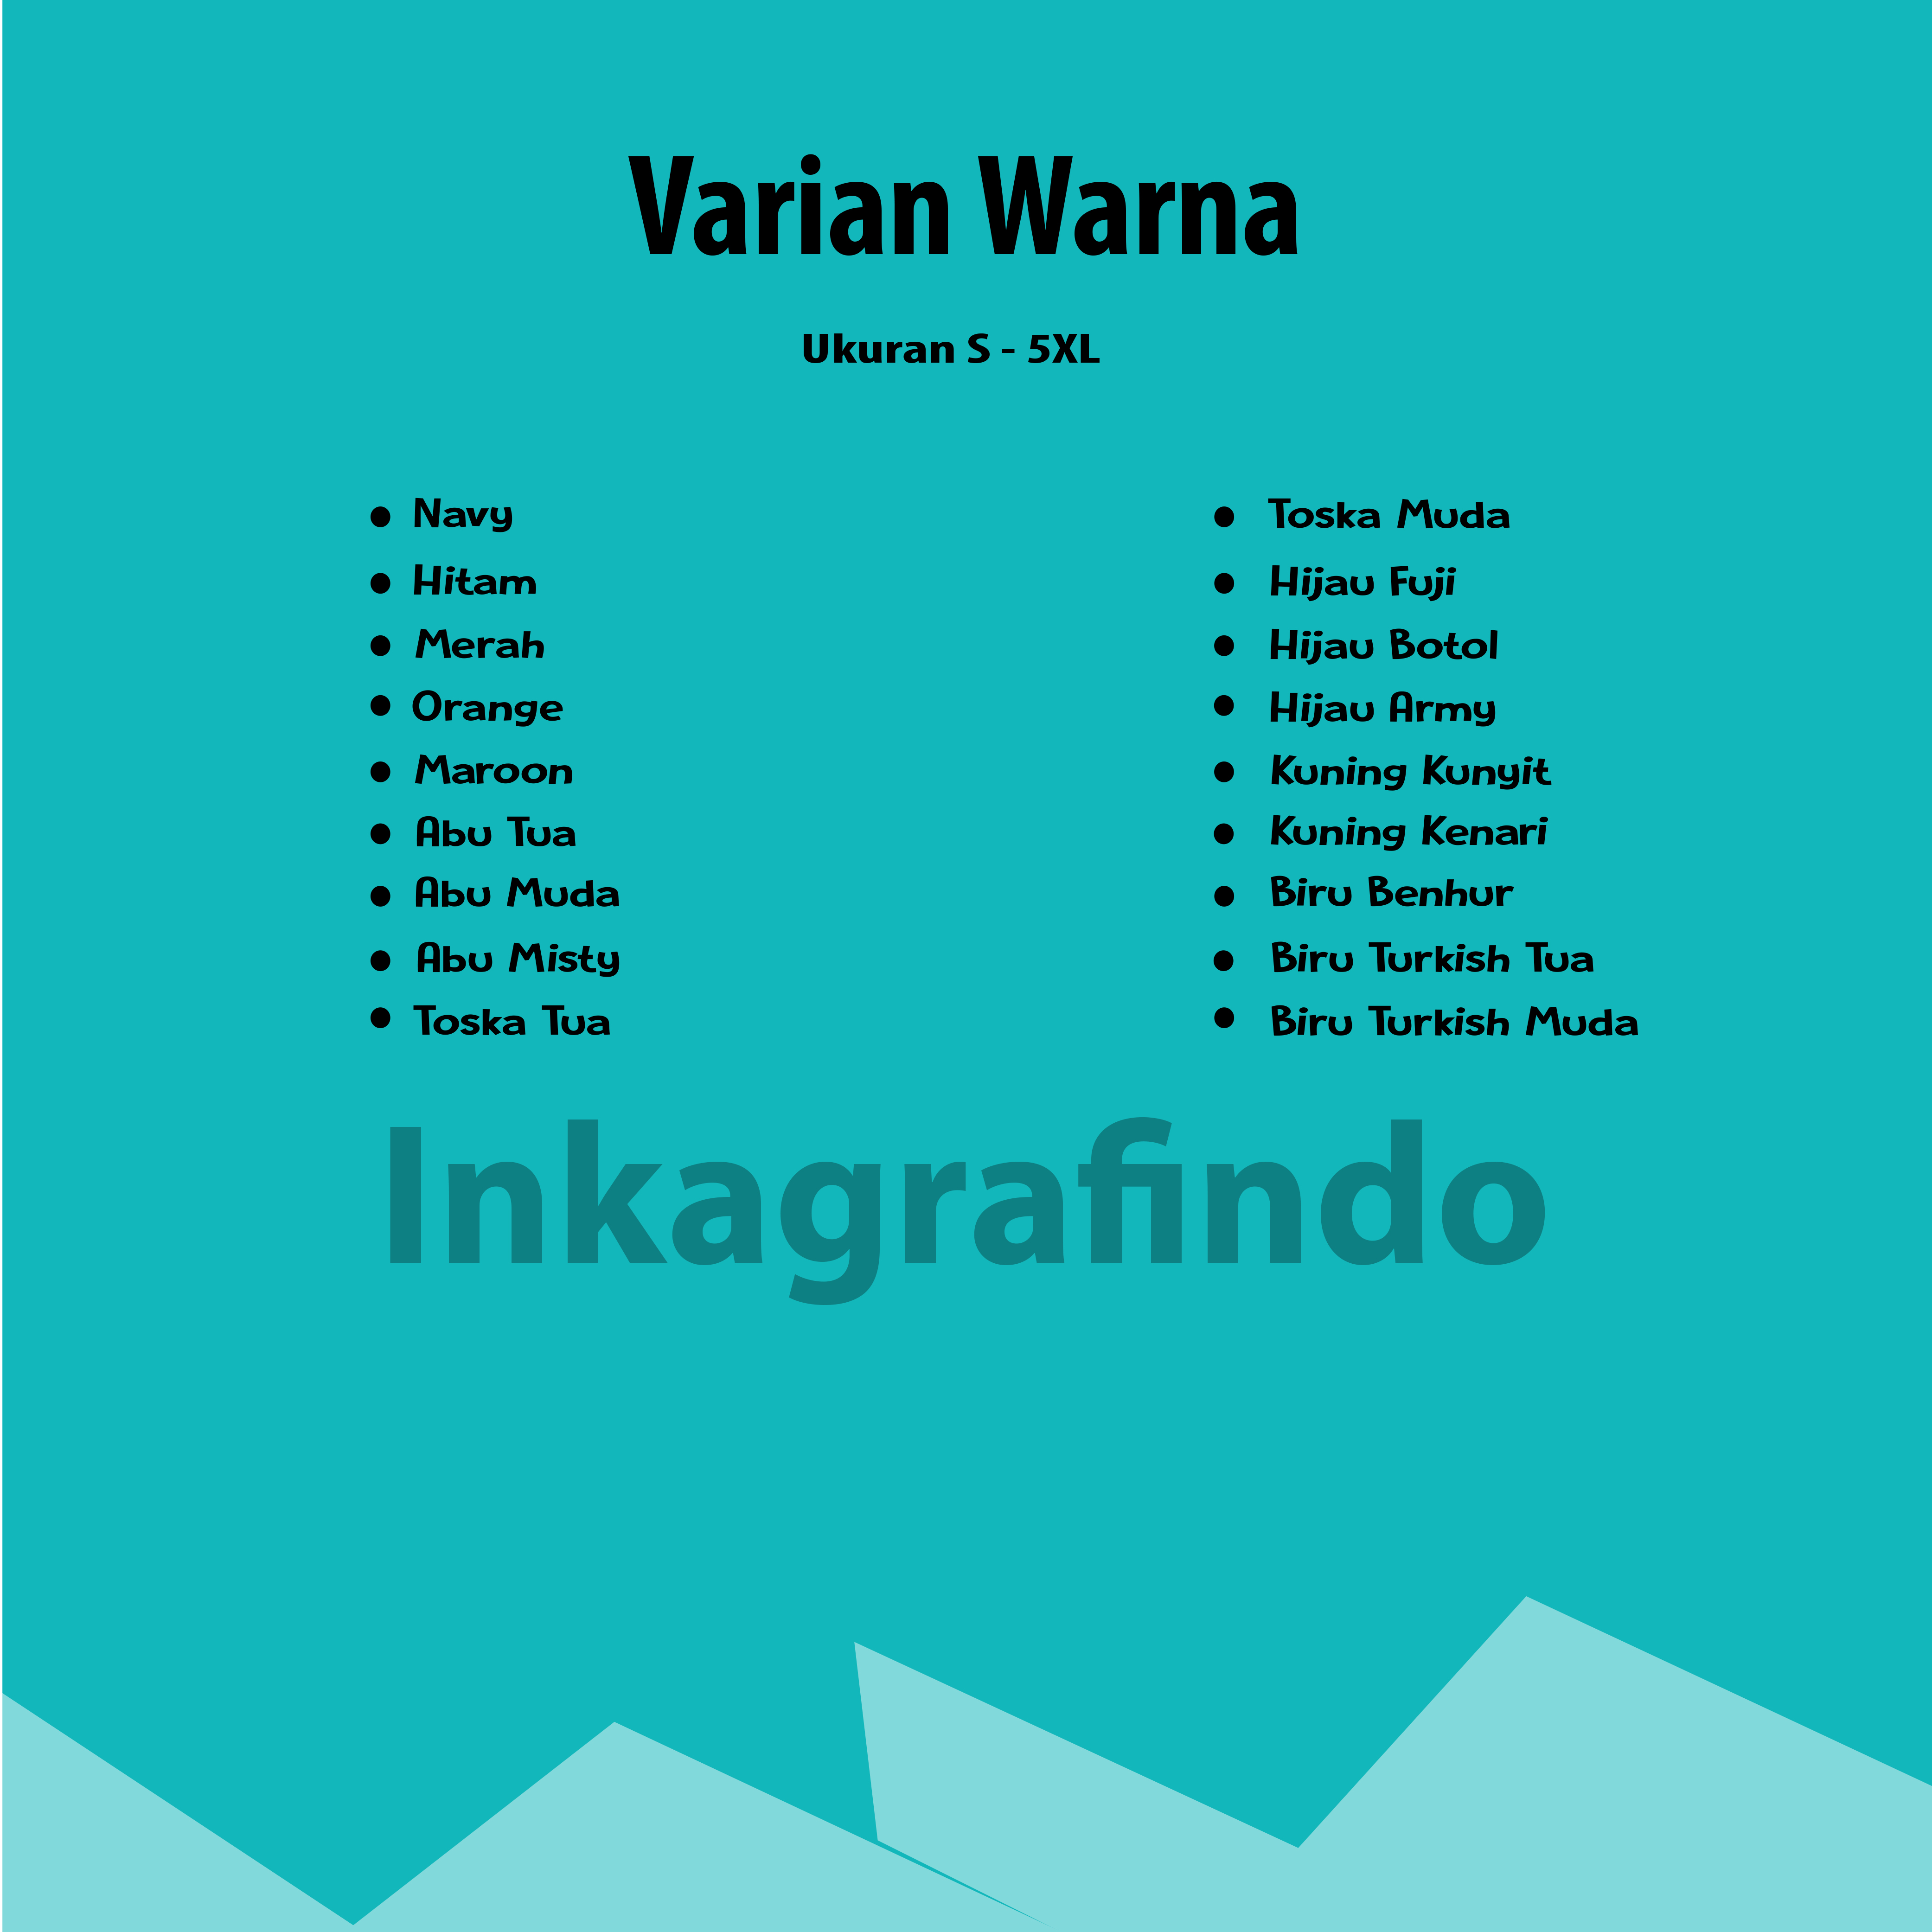 Varian Warna